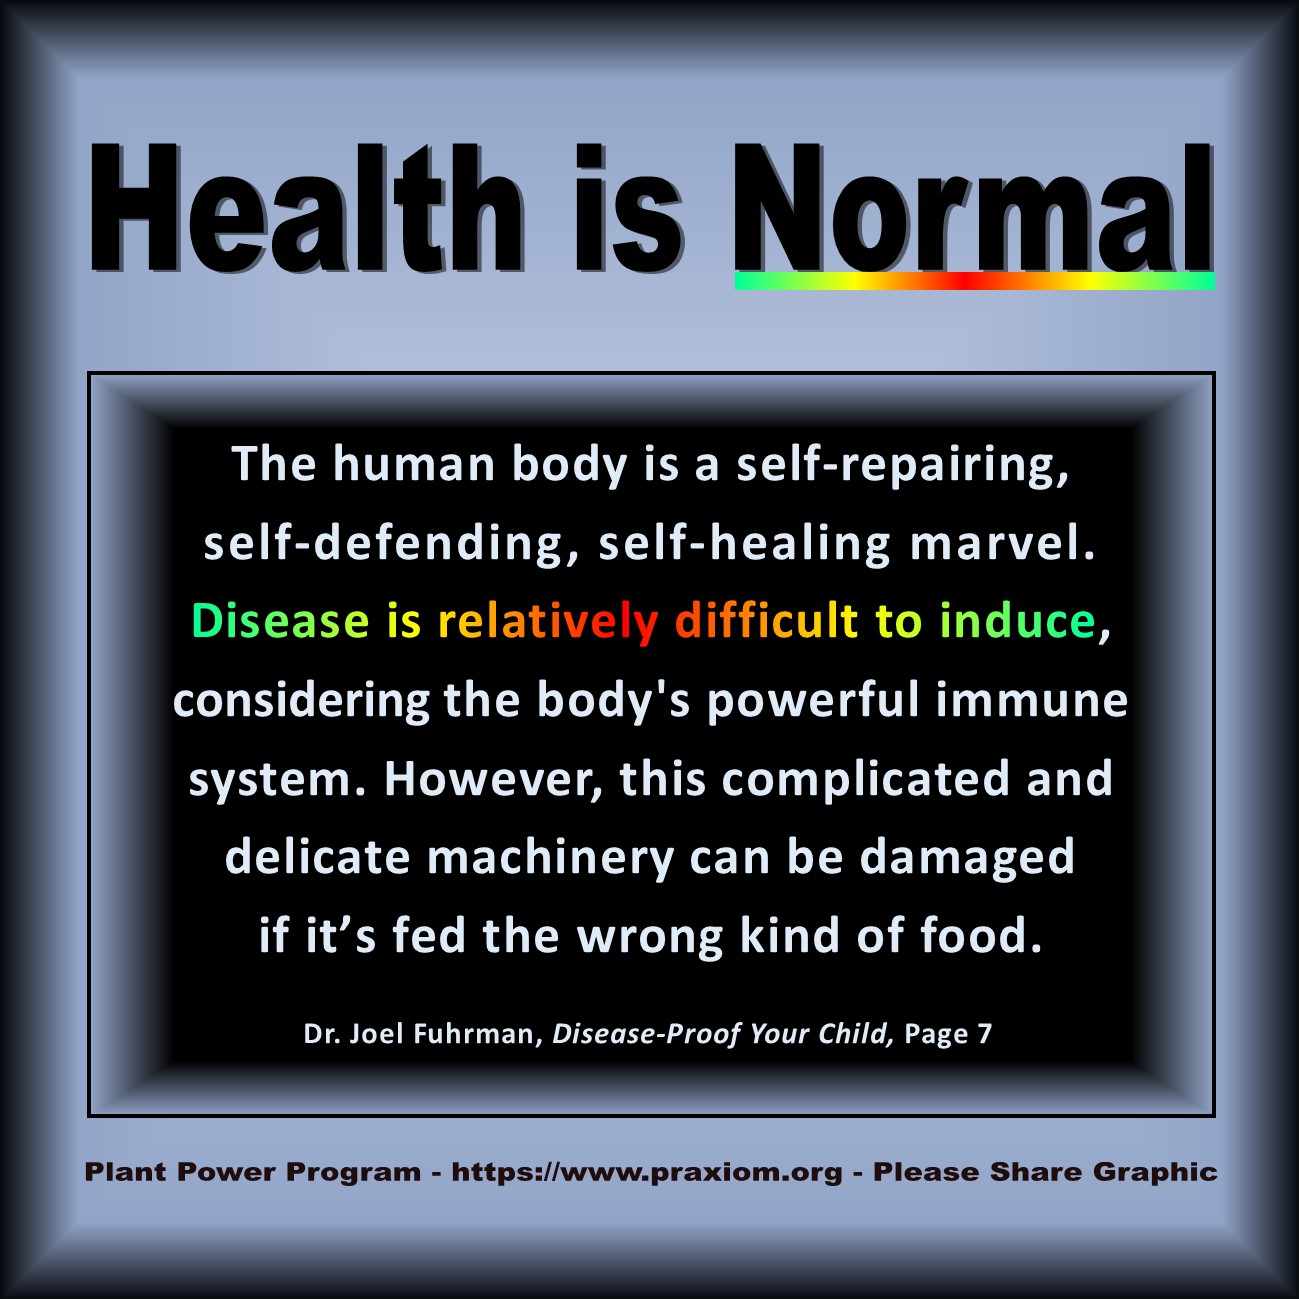 Health is Normal - Dr. Joel Fuhrman